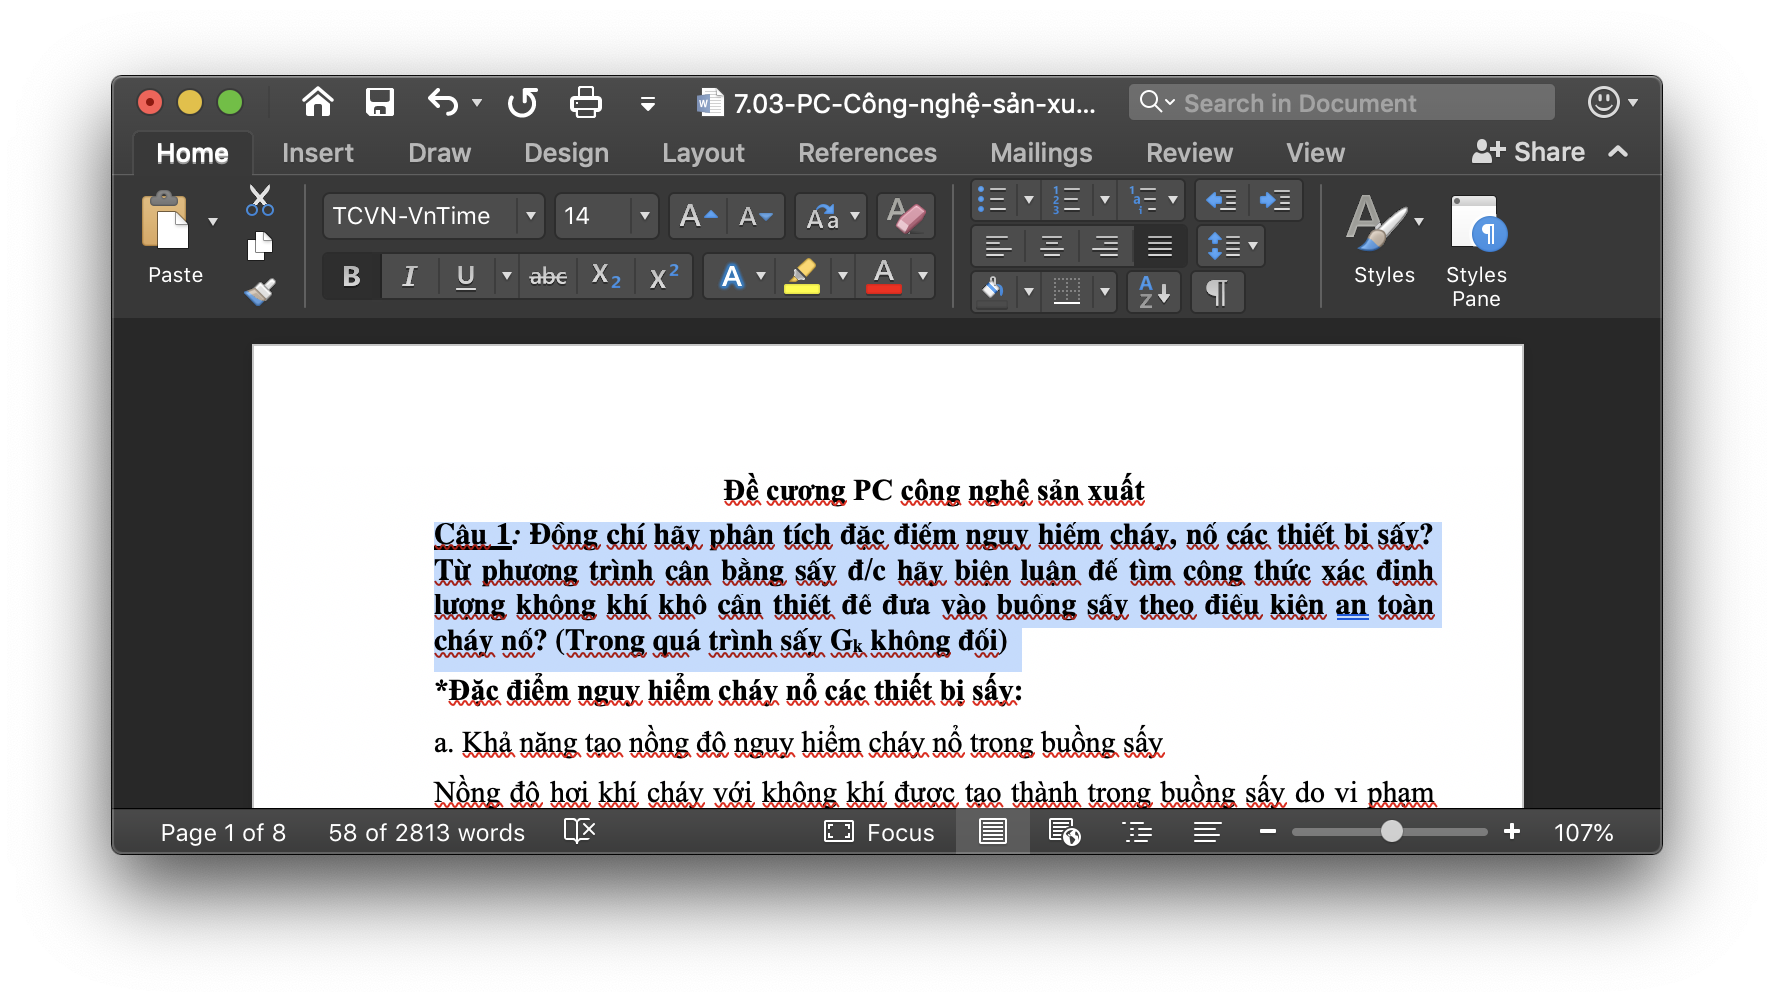 Font TCVN trên Mac:
Với sự phát triển của công nghệ, các font chữ TCVN có sẵn trên Mac giúp người dùng dễ dàng trong việc chỉnh sửa tài liệu bằng ngôn ngữ tiếng Việt. Để khám phá hình ảnh liên quan đến font chữ TCVN trên Mac, điều quan trọng là cập nhật các thiết bị và phần mềm mới nhất.